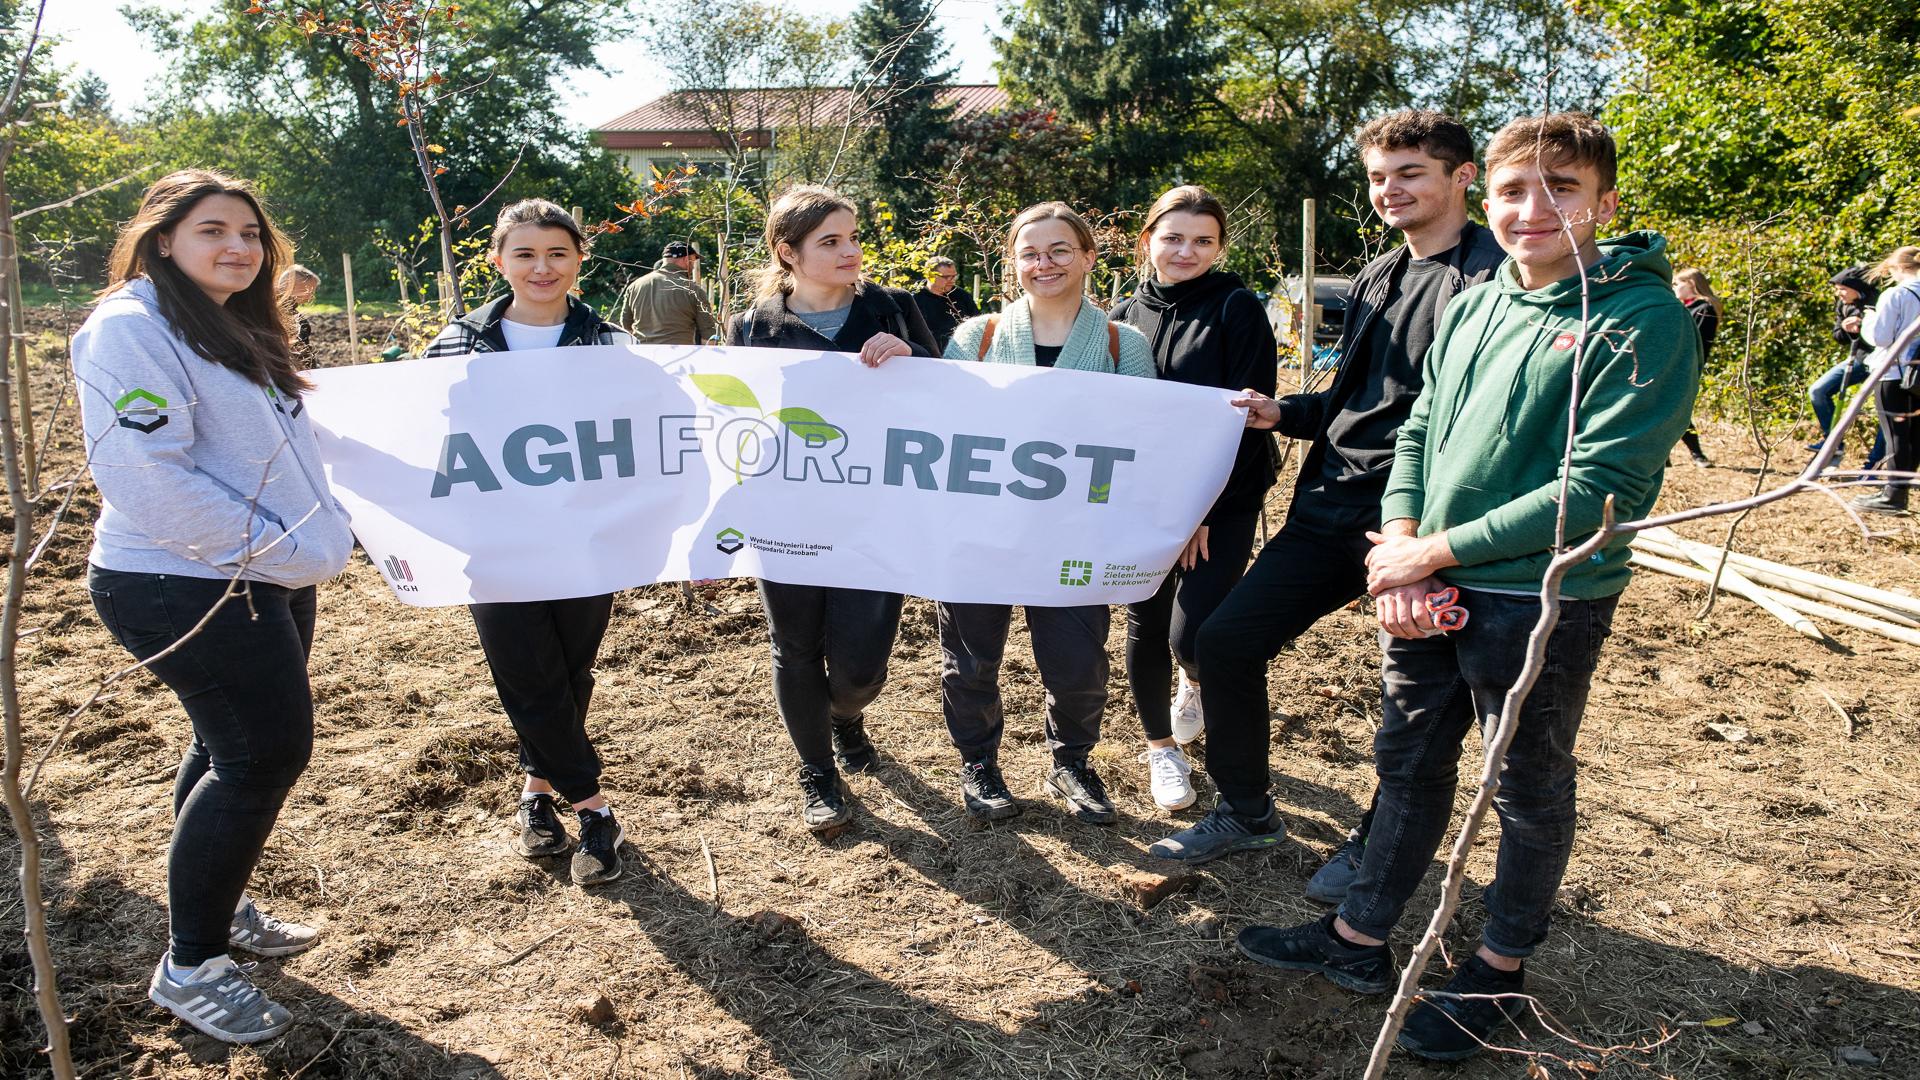 Cztery studentki oraz dwaj studenci stoją na polanie z białym banerem na którym znajduje się szary napis AGH For.Rest. Za nimi znajduje się budynek szkoły przysłonięty drzewami.